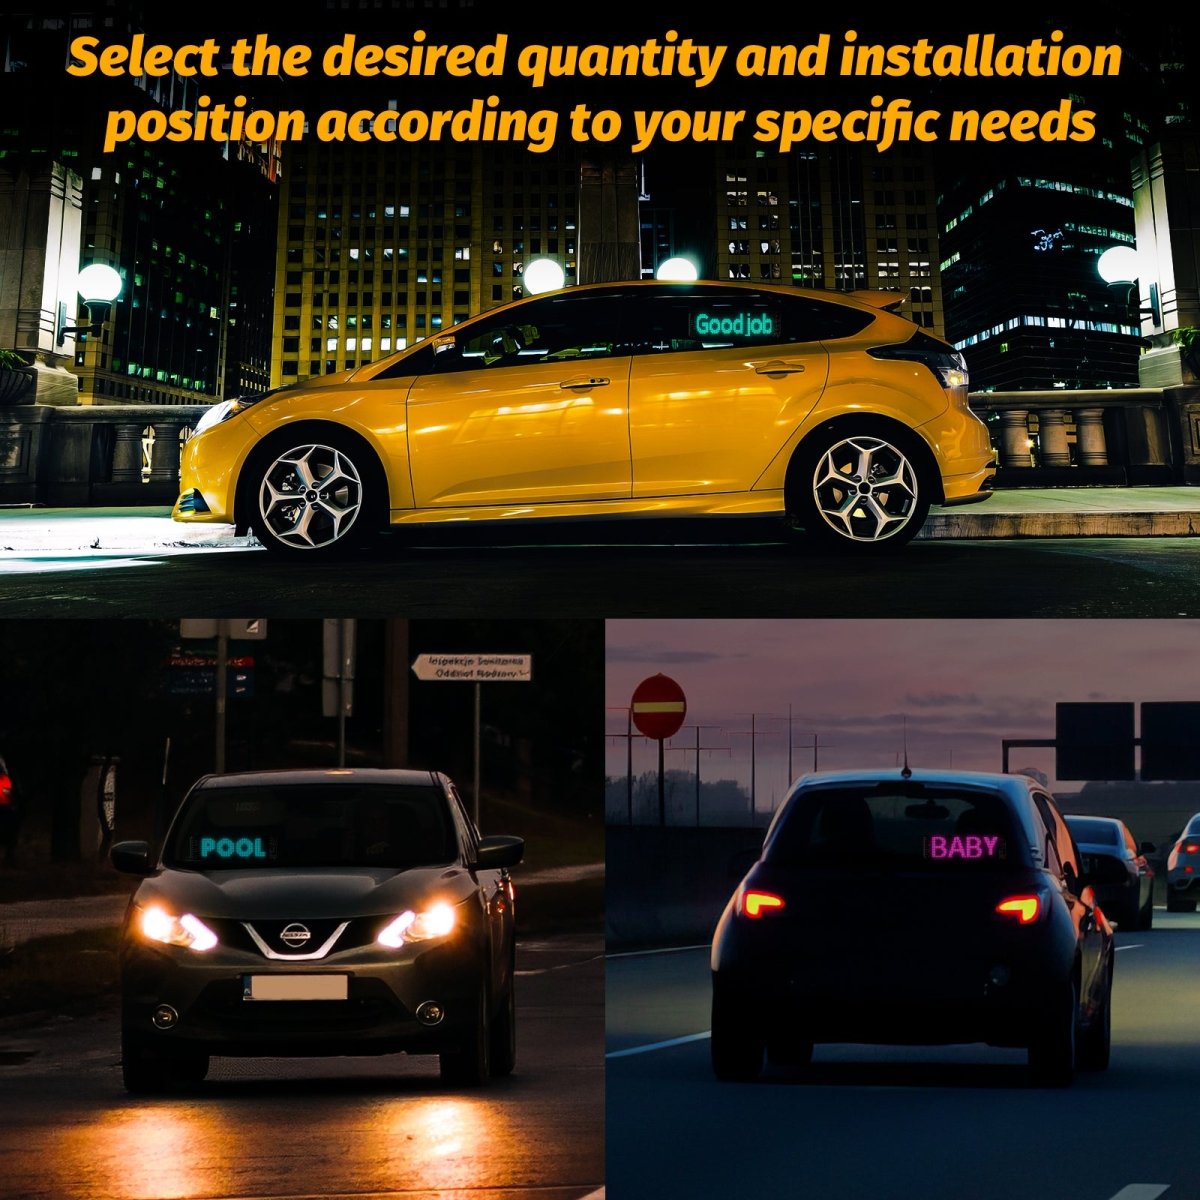 Gelrova LED Car Sign Light - Carstar 6 Driver Version - 4" x 14“ - LED Backpack Car Sign